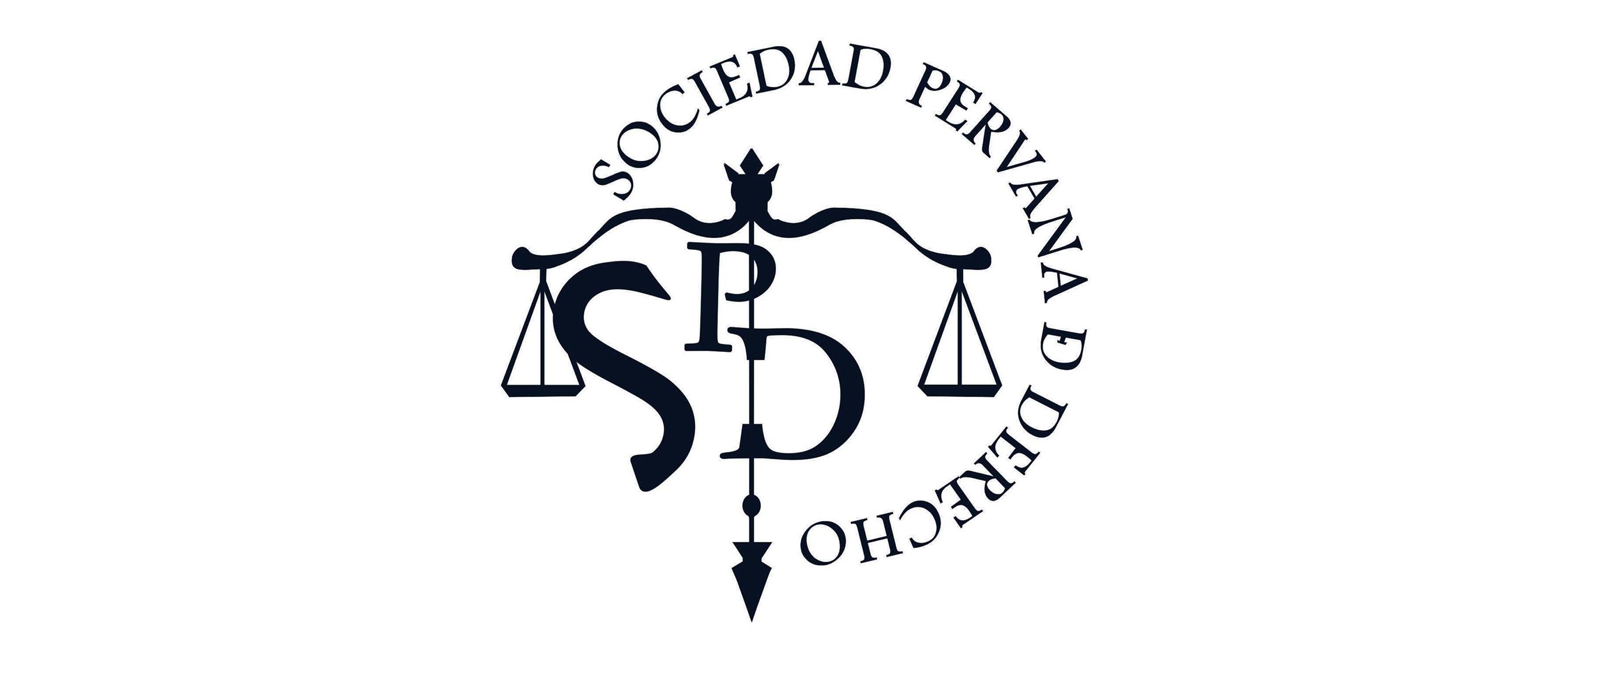 Sociedad Peruana de Derecho